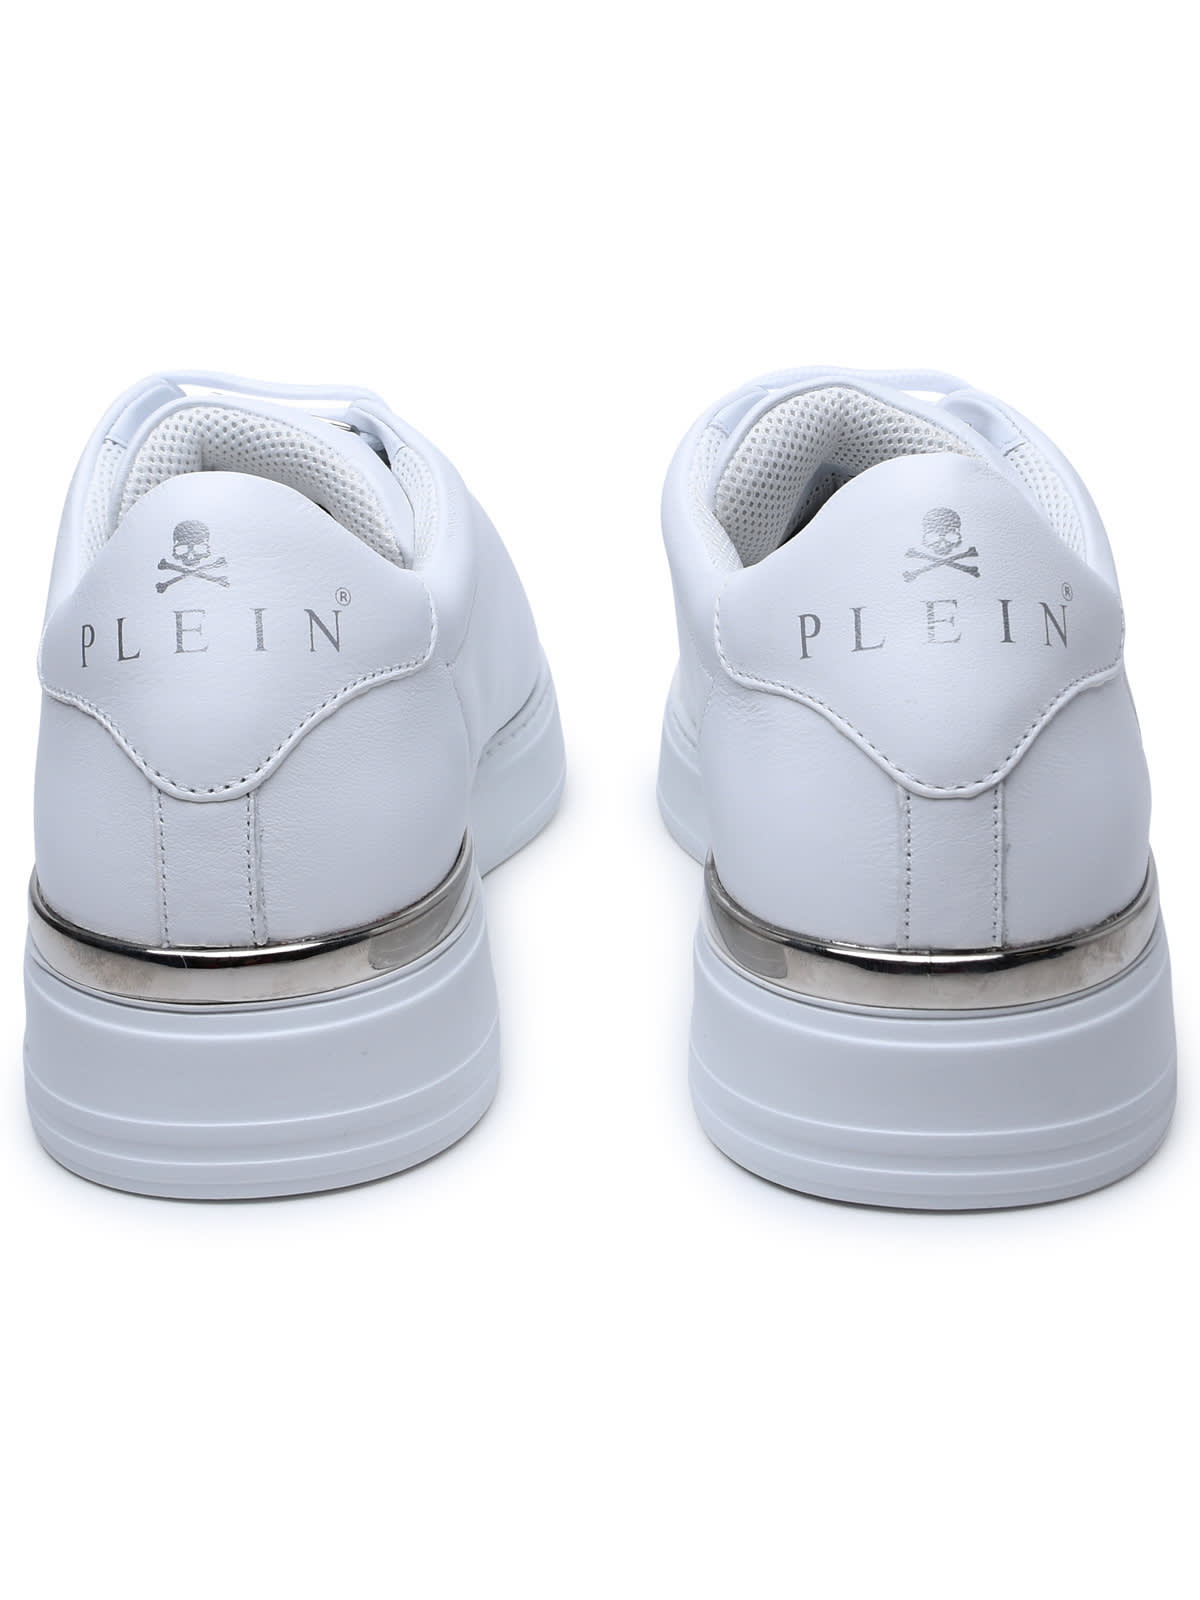 Shop Philipp Plein Hexagon White Leather Sneakers